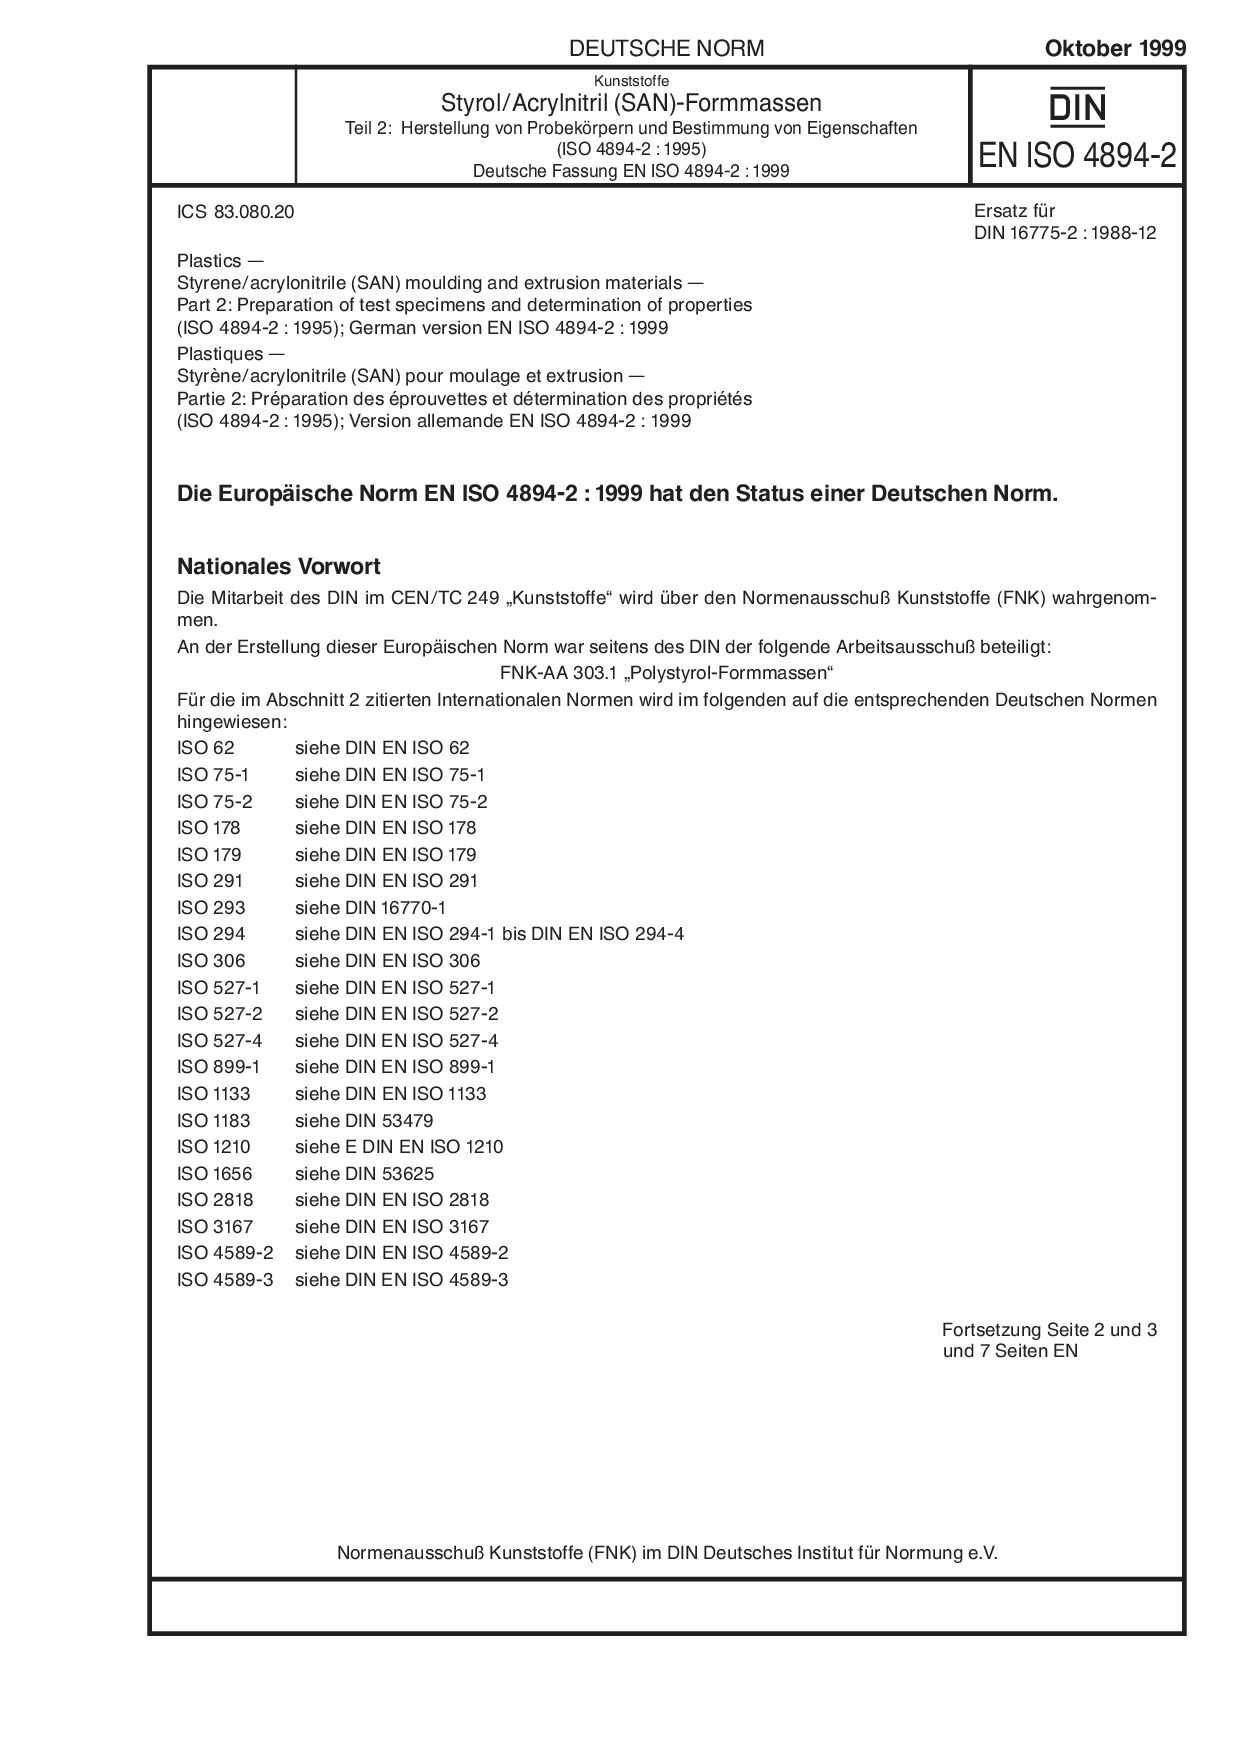 DIN EN ISO 4894-2:1999